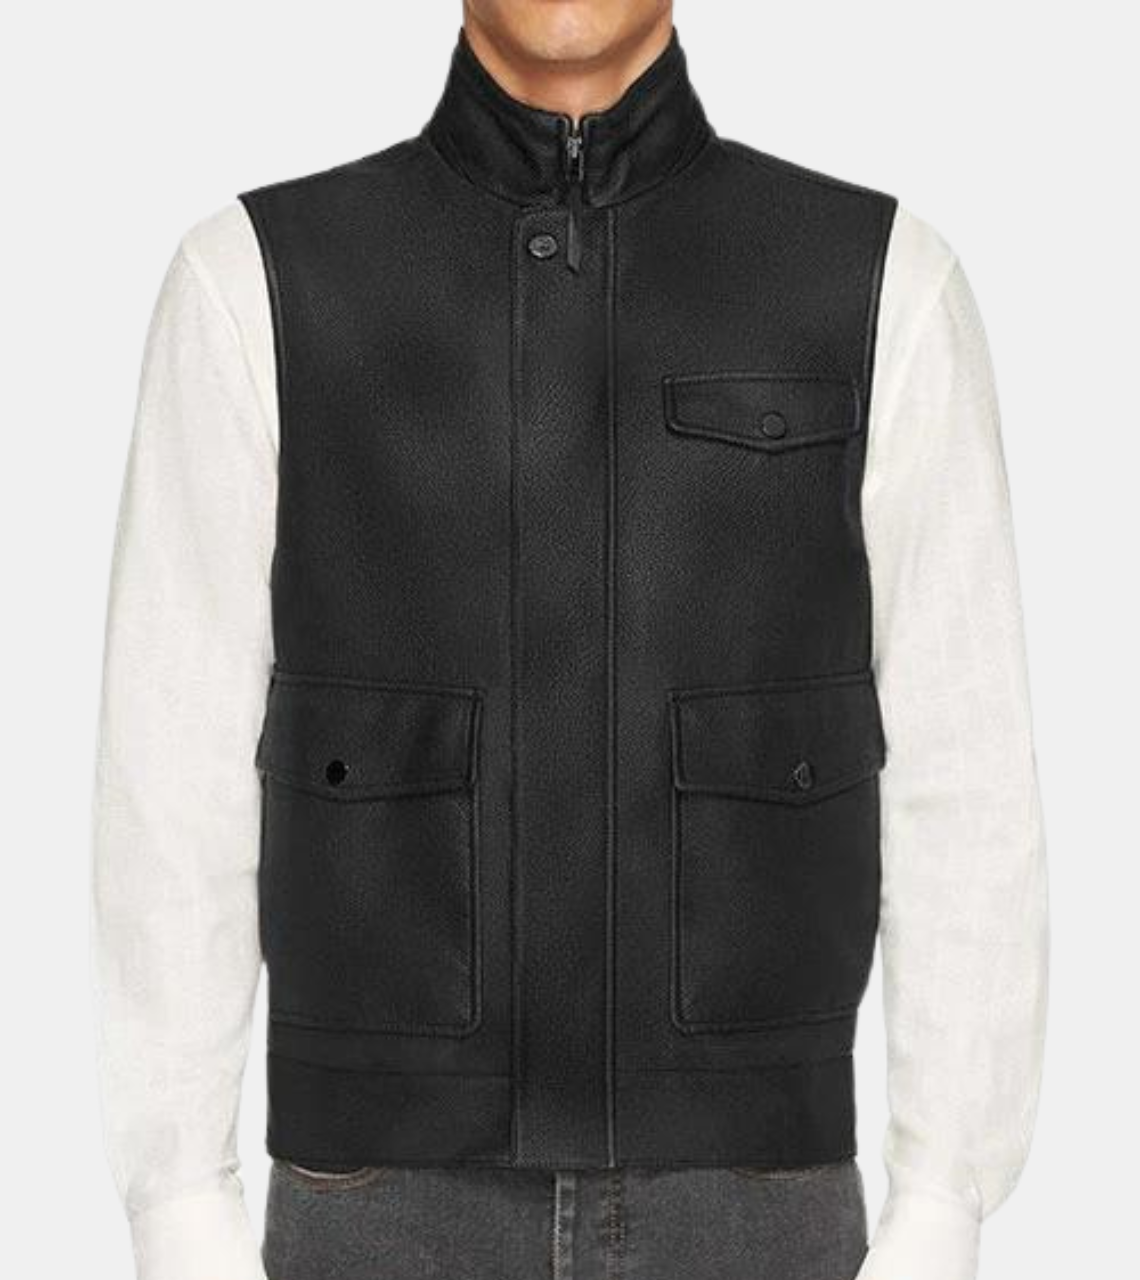 Bjorn Men's Black Leather Vest